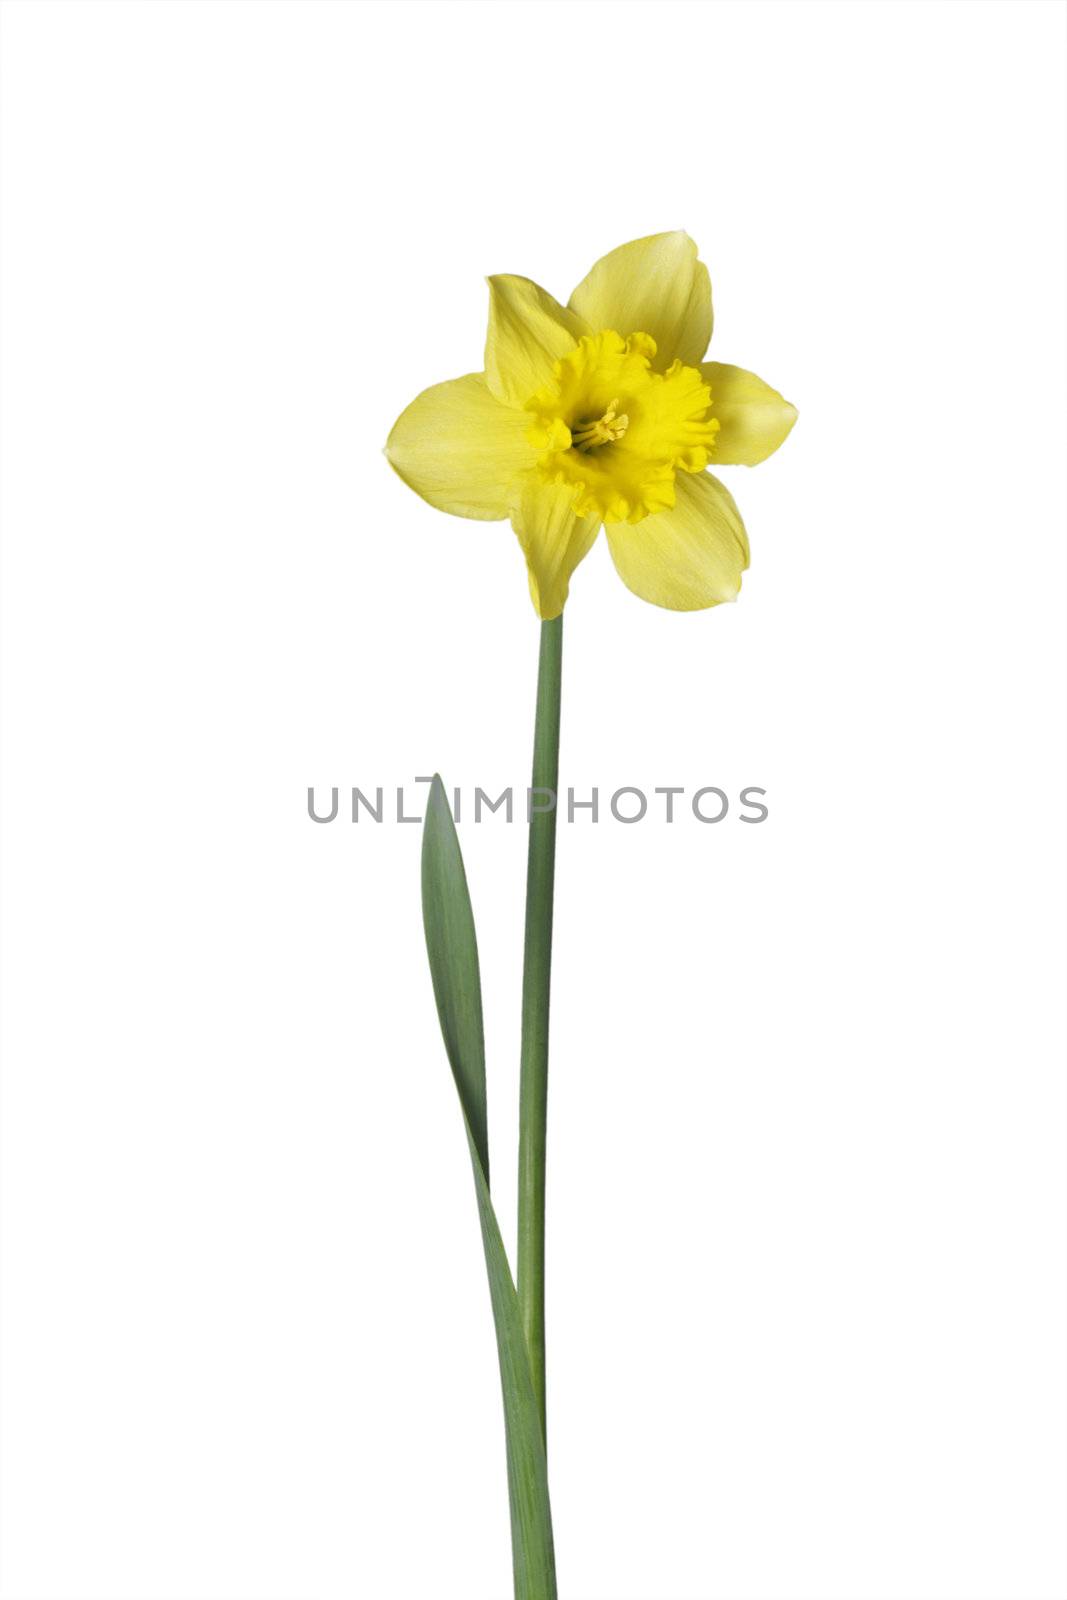 Daffodil by Teamarbeit